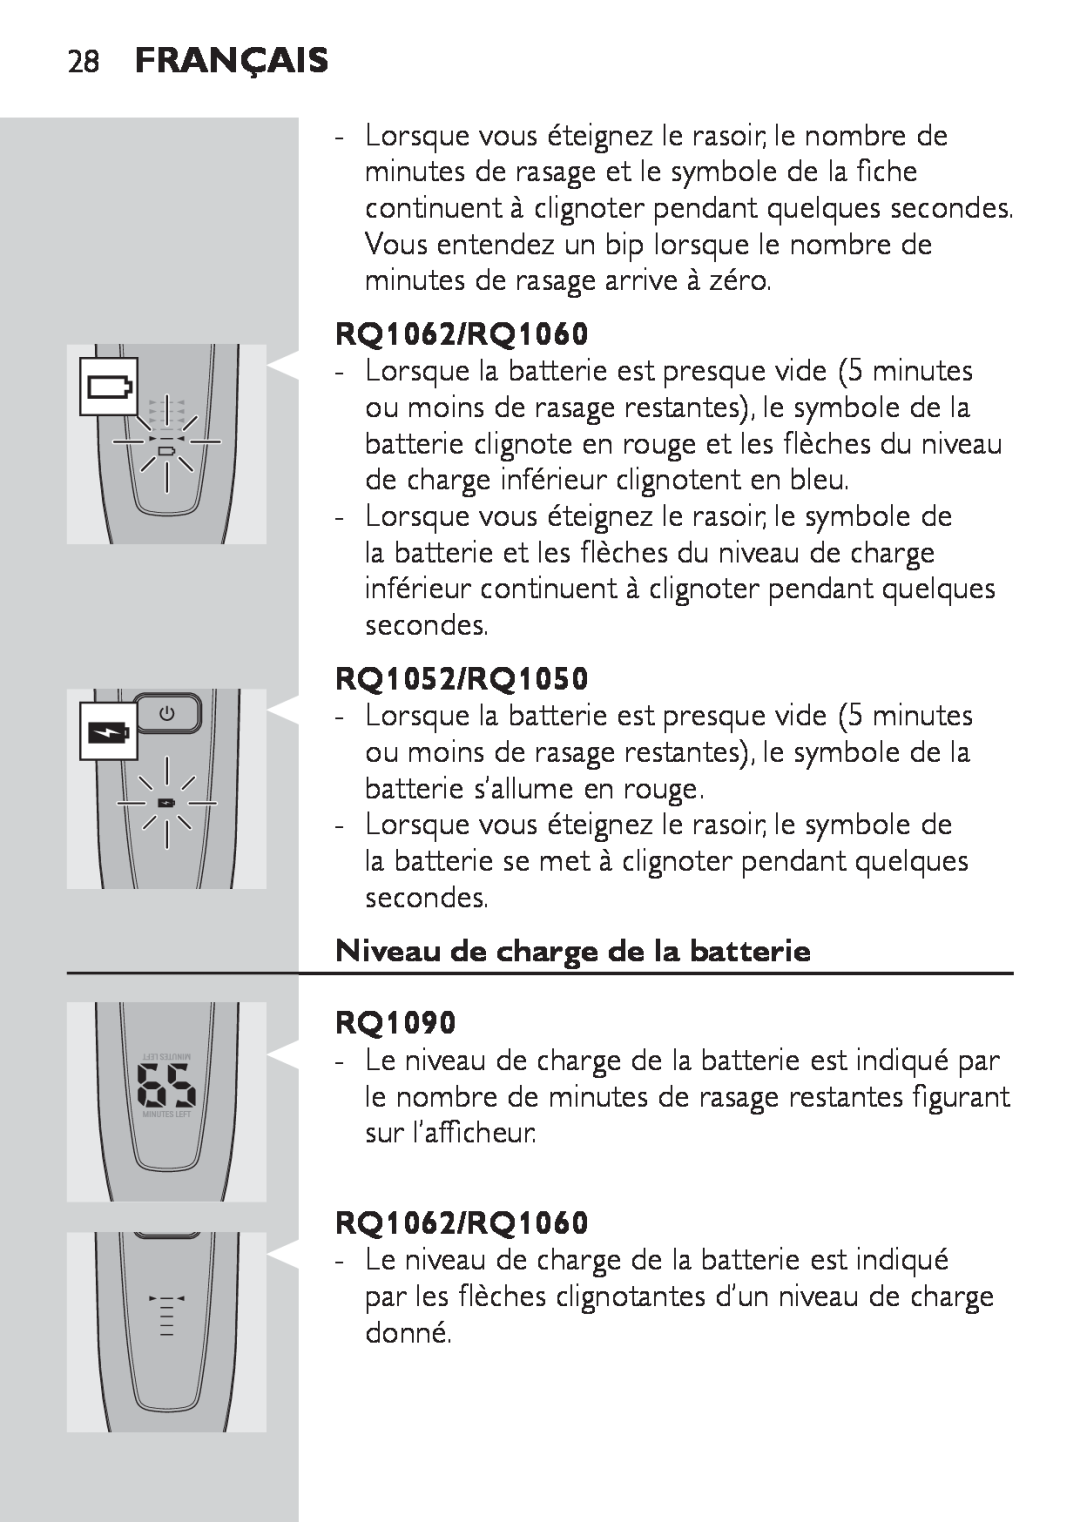 Philips manual Français, Niveau de charge de la batterie RQ1090, RQ1062/RQ1060, RQ1052/RQ1050 